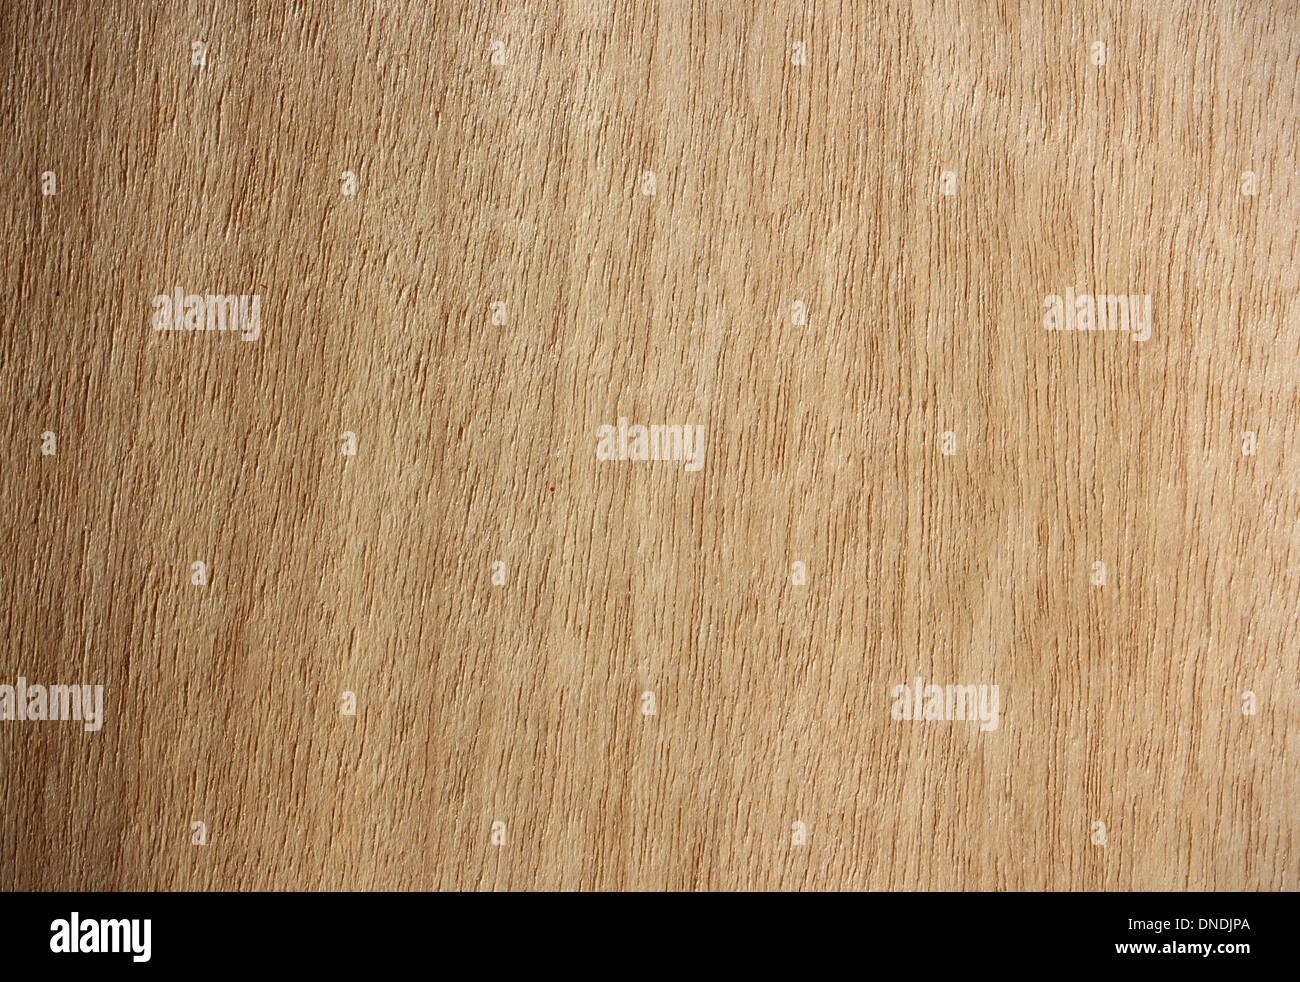 La surface de bois, Aniegre (Pouteria/ Aningeria) - lignes verticales Banque D'Images